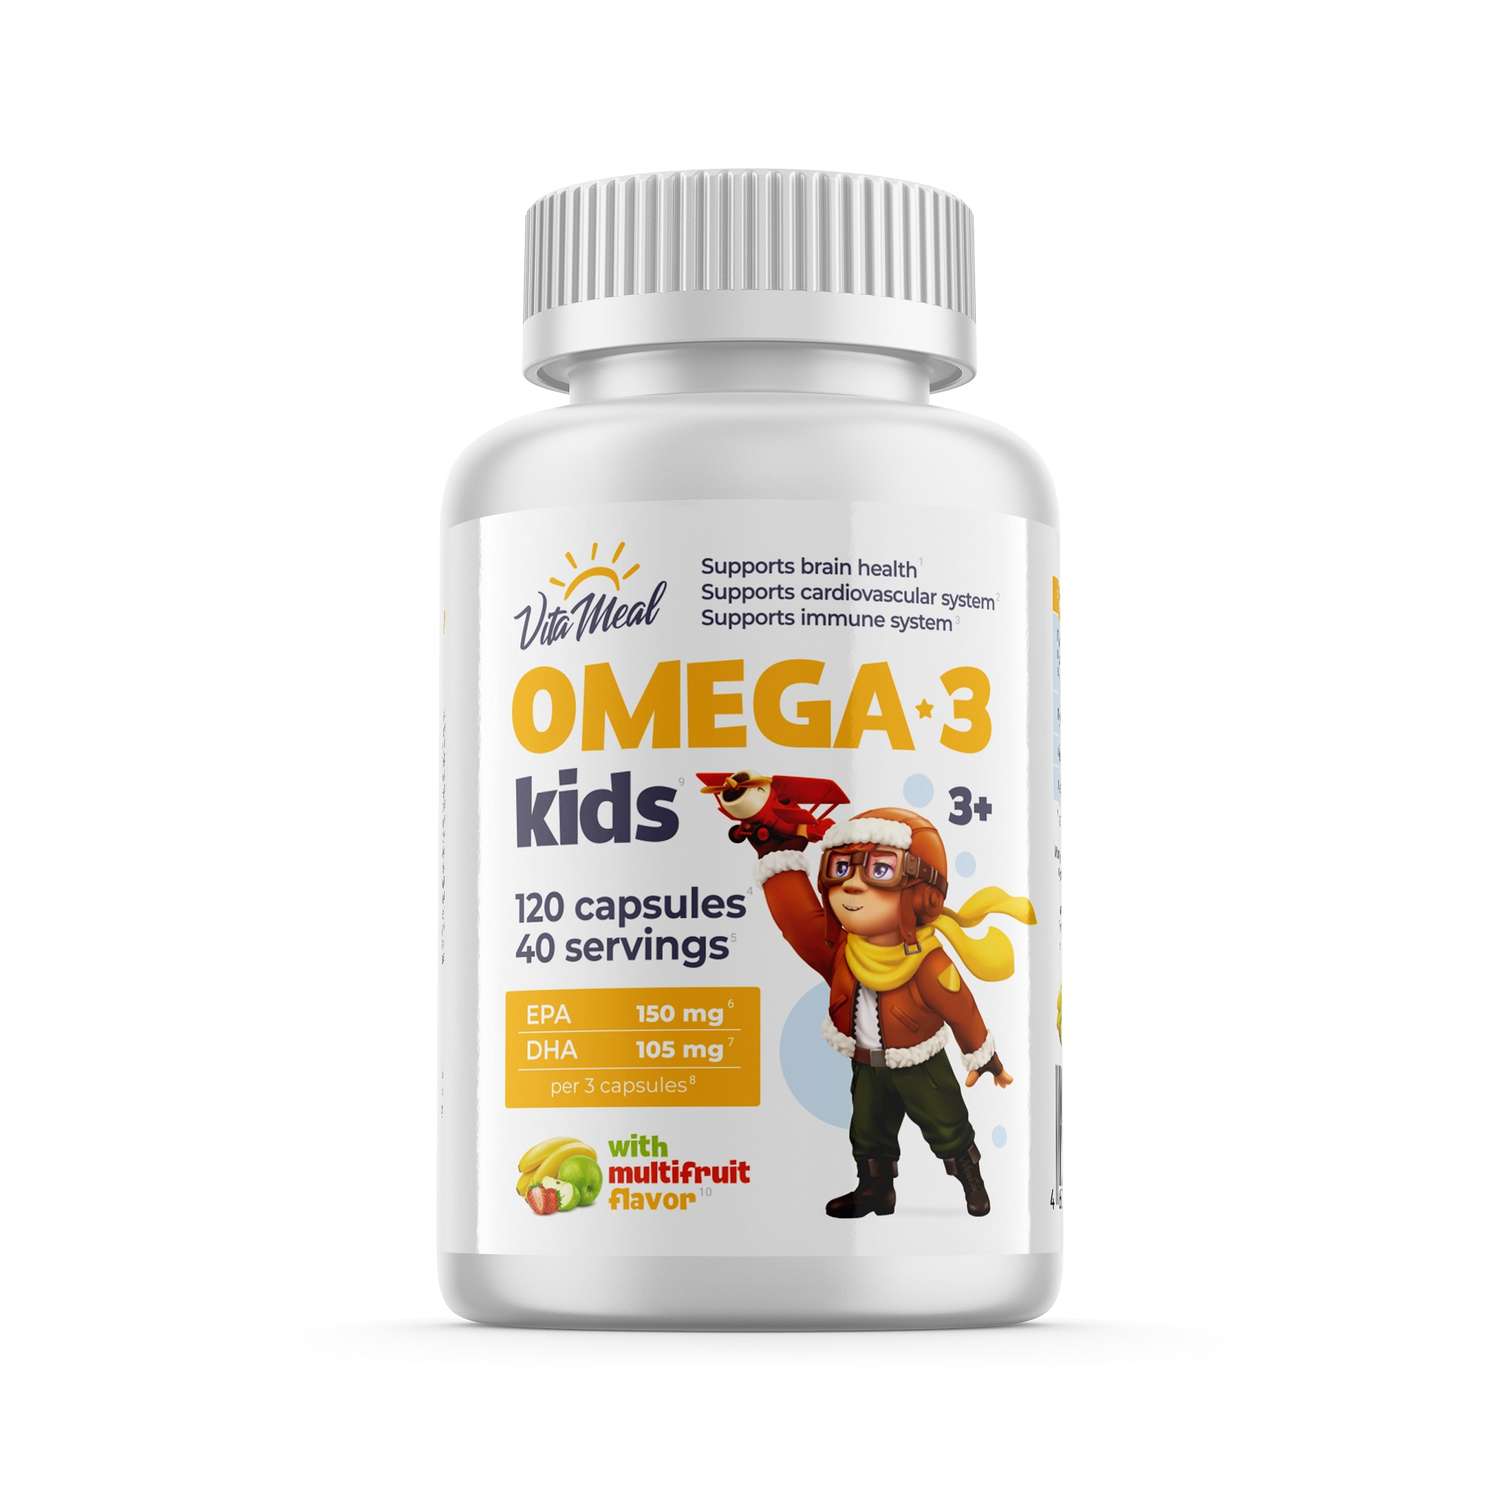 Биологически активная добавка VitaMeal Омега-3 Kids для детей с 3 лет мальтифрукт 120 капсул - фото 1